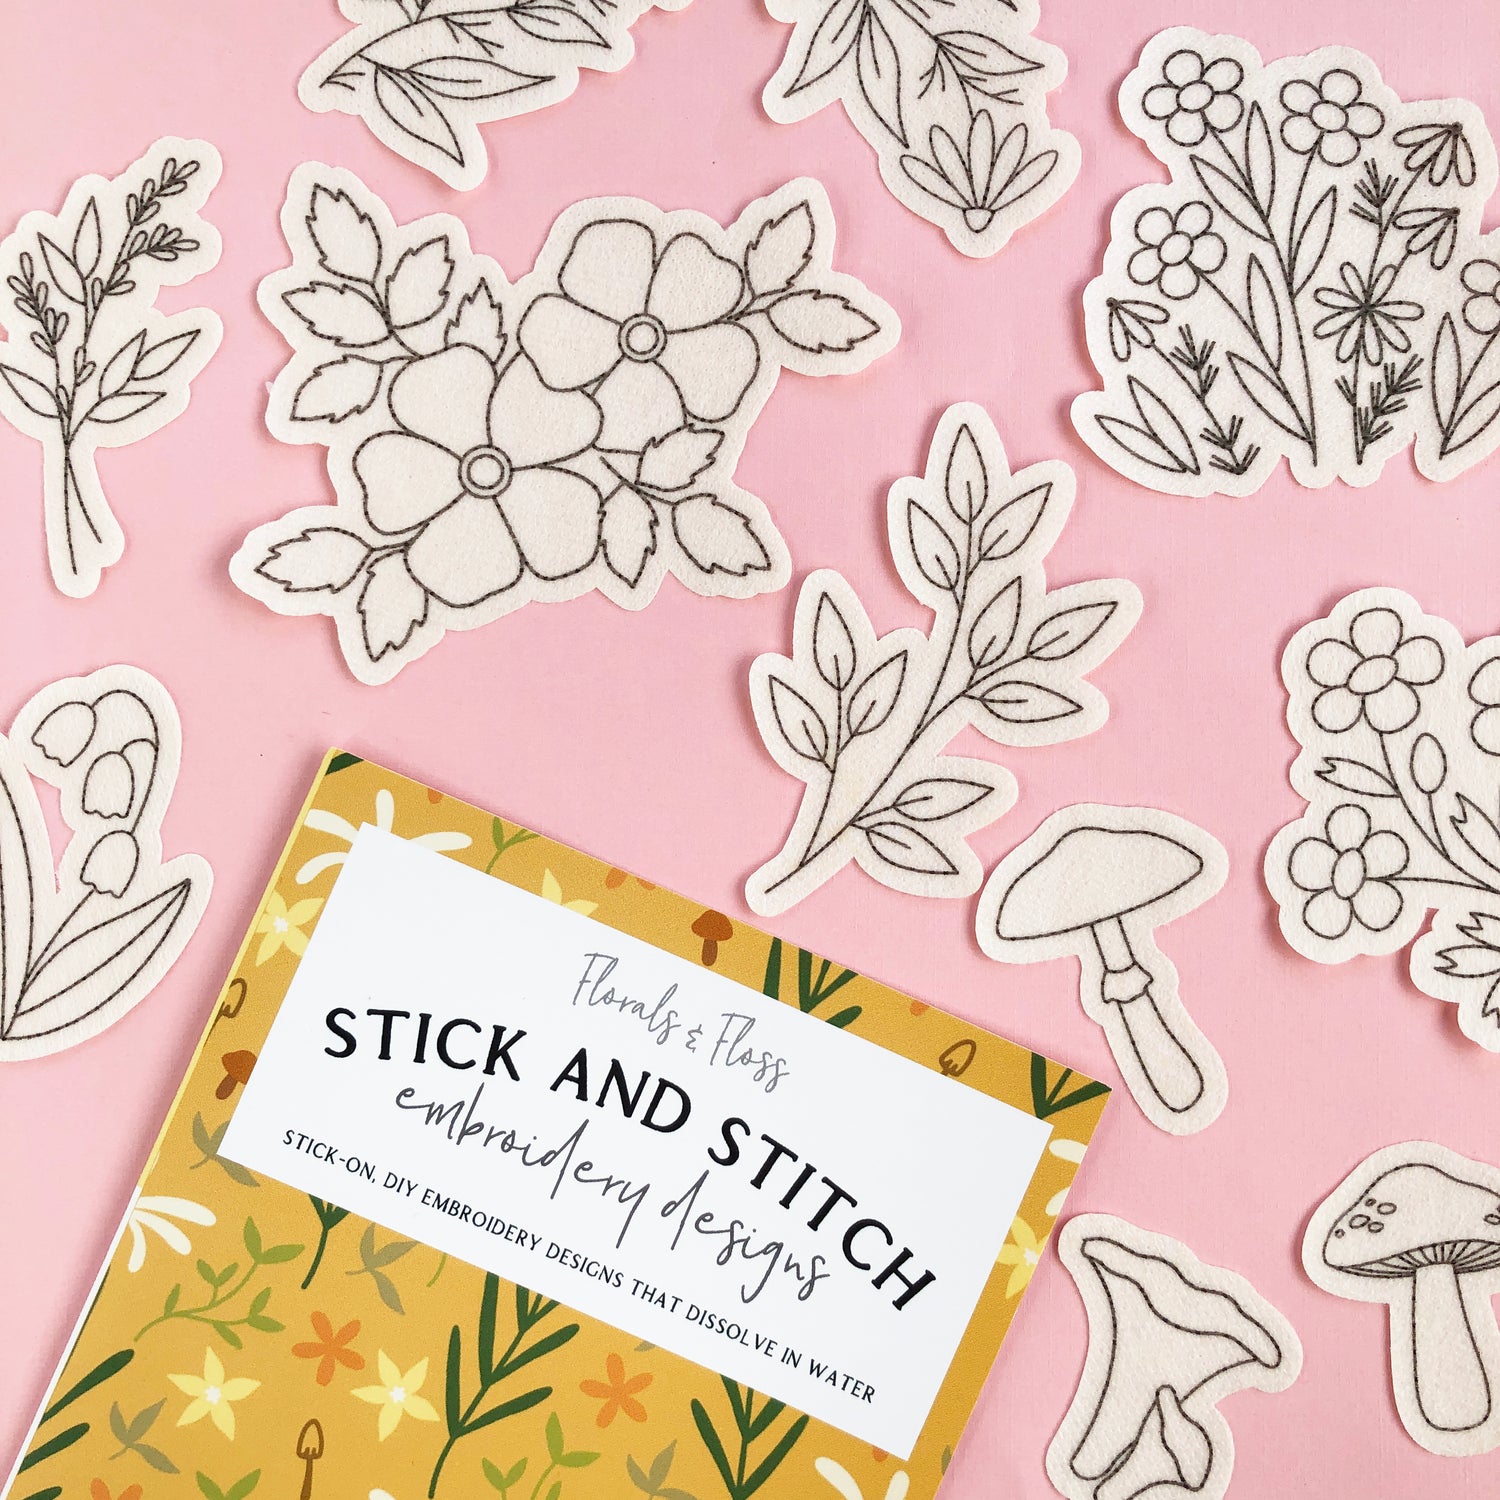 Stick and Stitch Botanical Embroidery Patterns